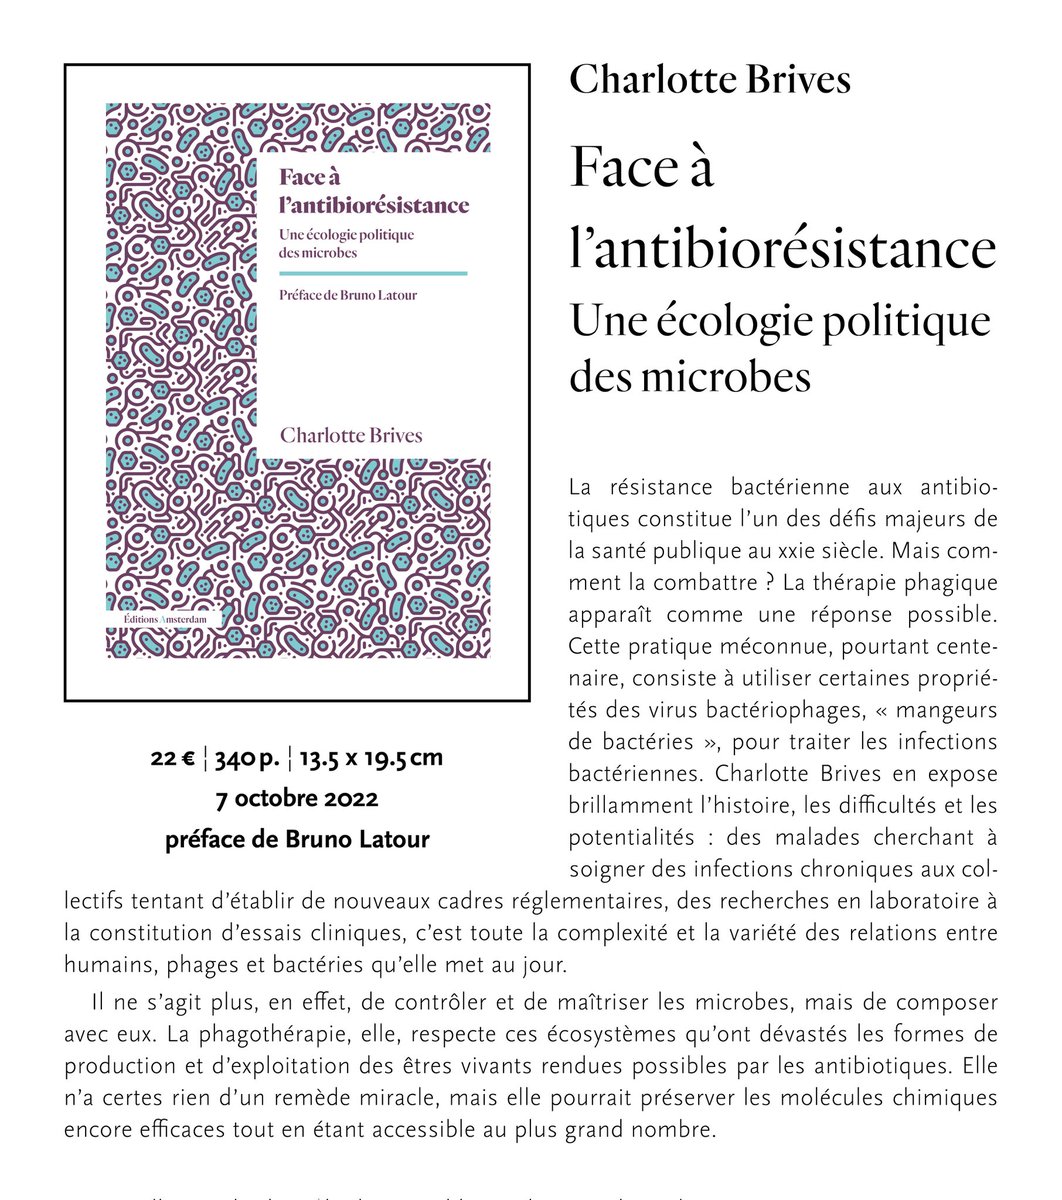 J'aurai la joie de présenter mon livre, Face à l'antibioresistance, une écologie politique des microbes, à paraître aux @amsterdam_ed le jeudi 6 octobre 2022 à la librairie @LNordest. Au plaisir de vous y retrouver!